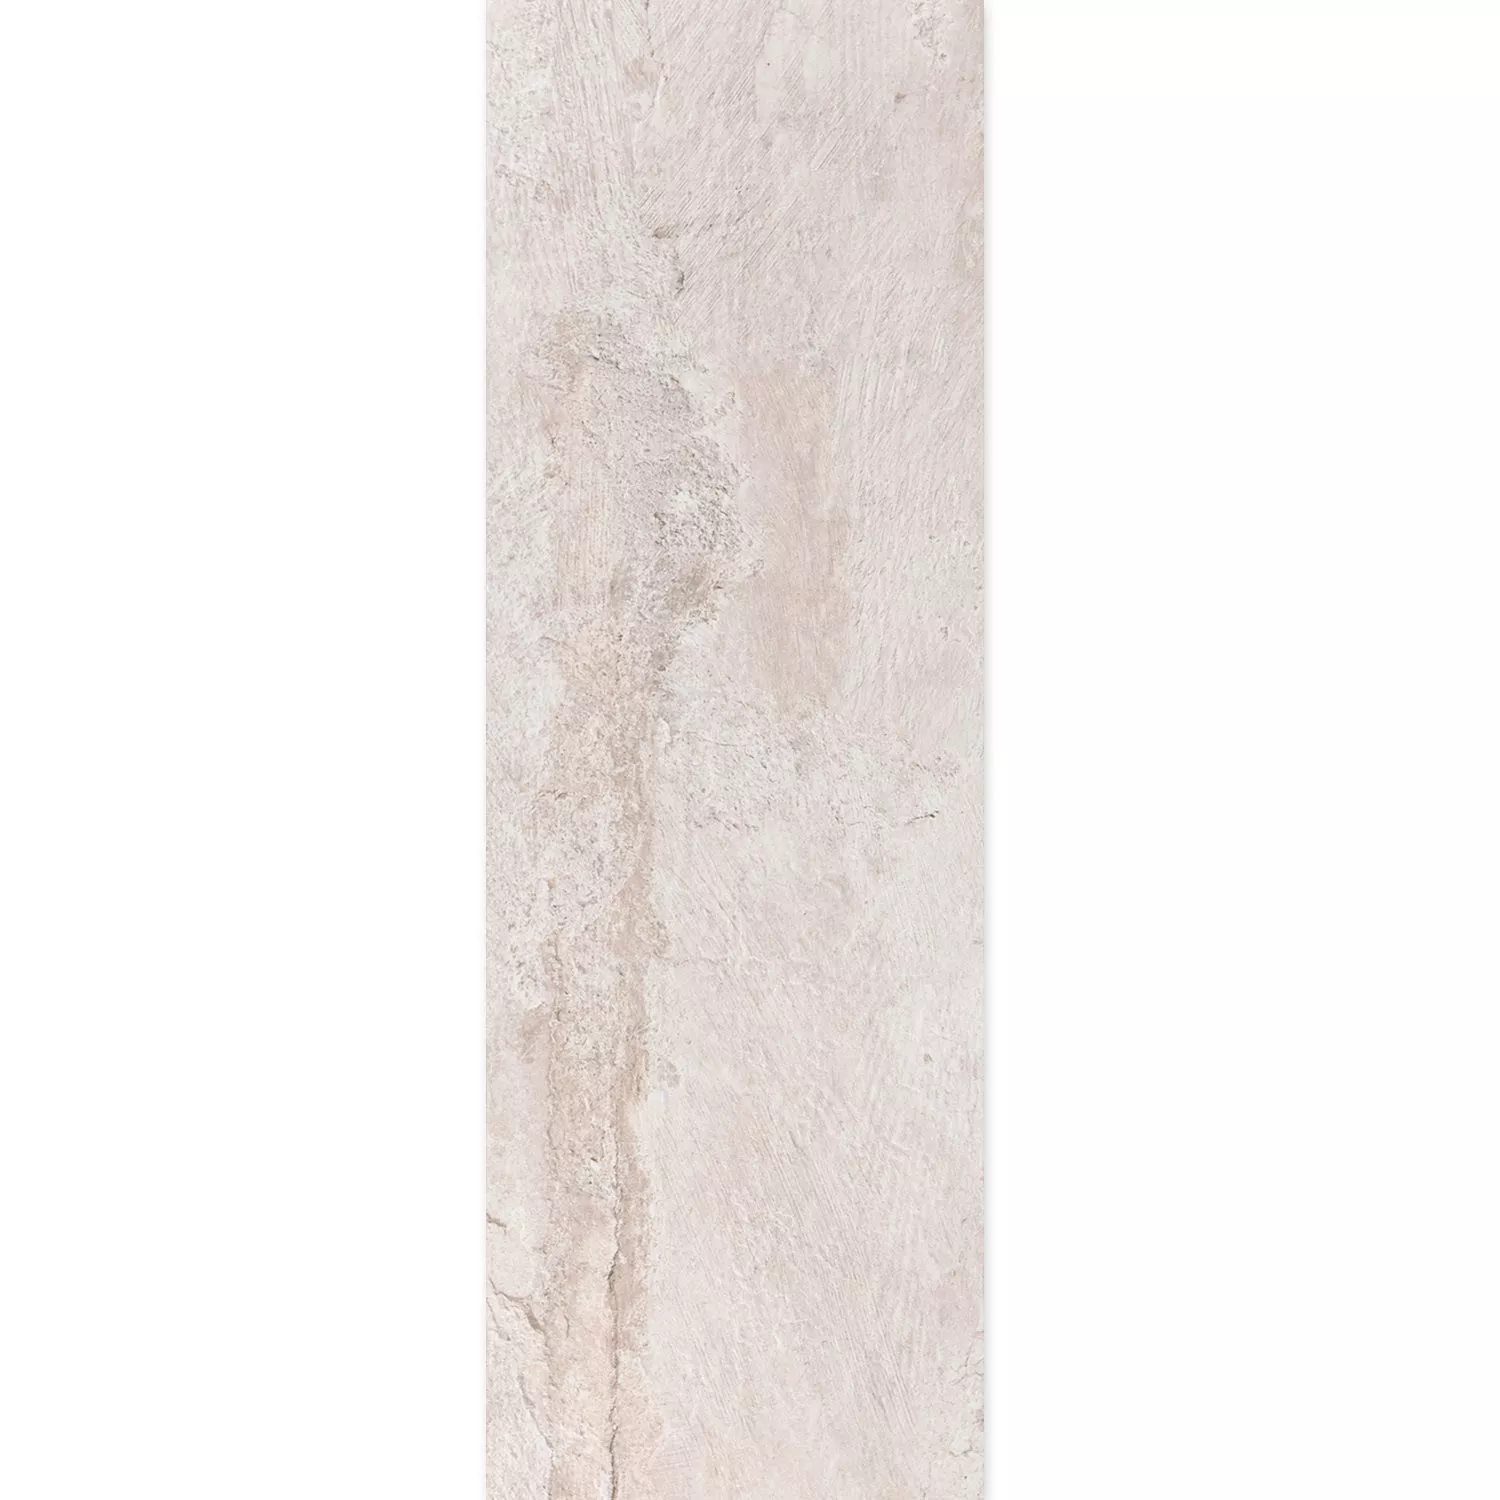 Ladrilho Olhar de Pedra Polaris R10 Branco 30x120cm